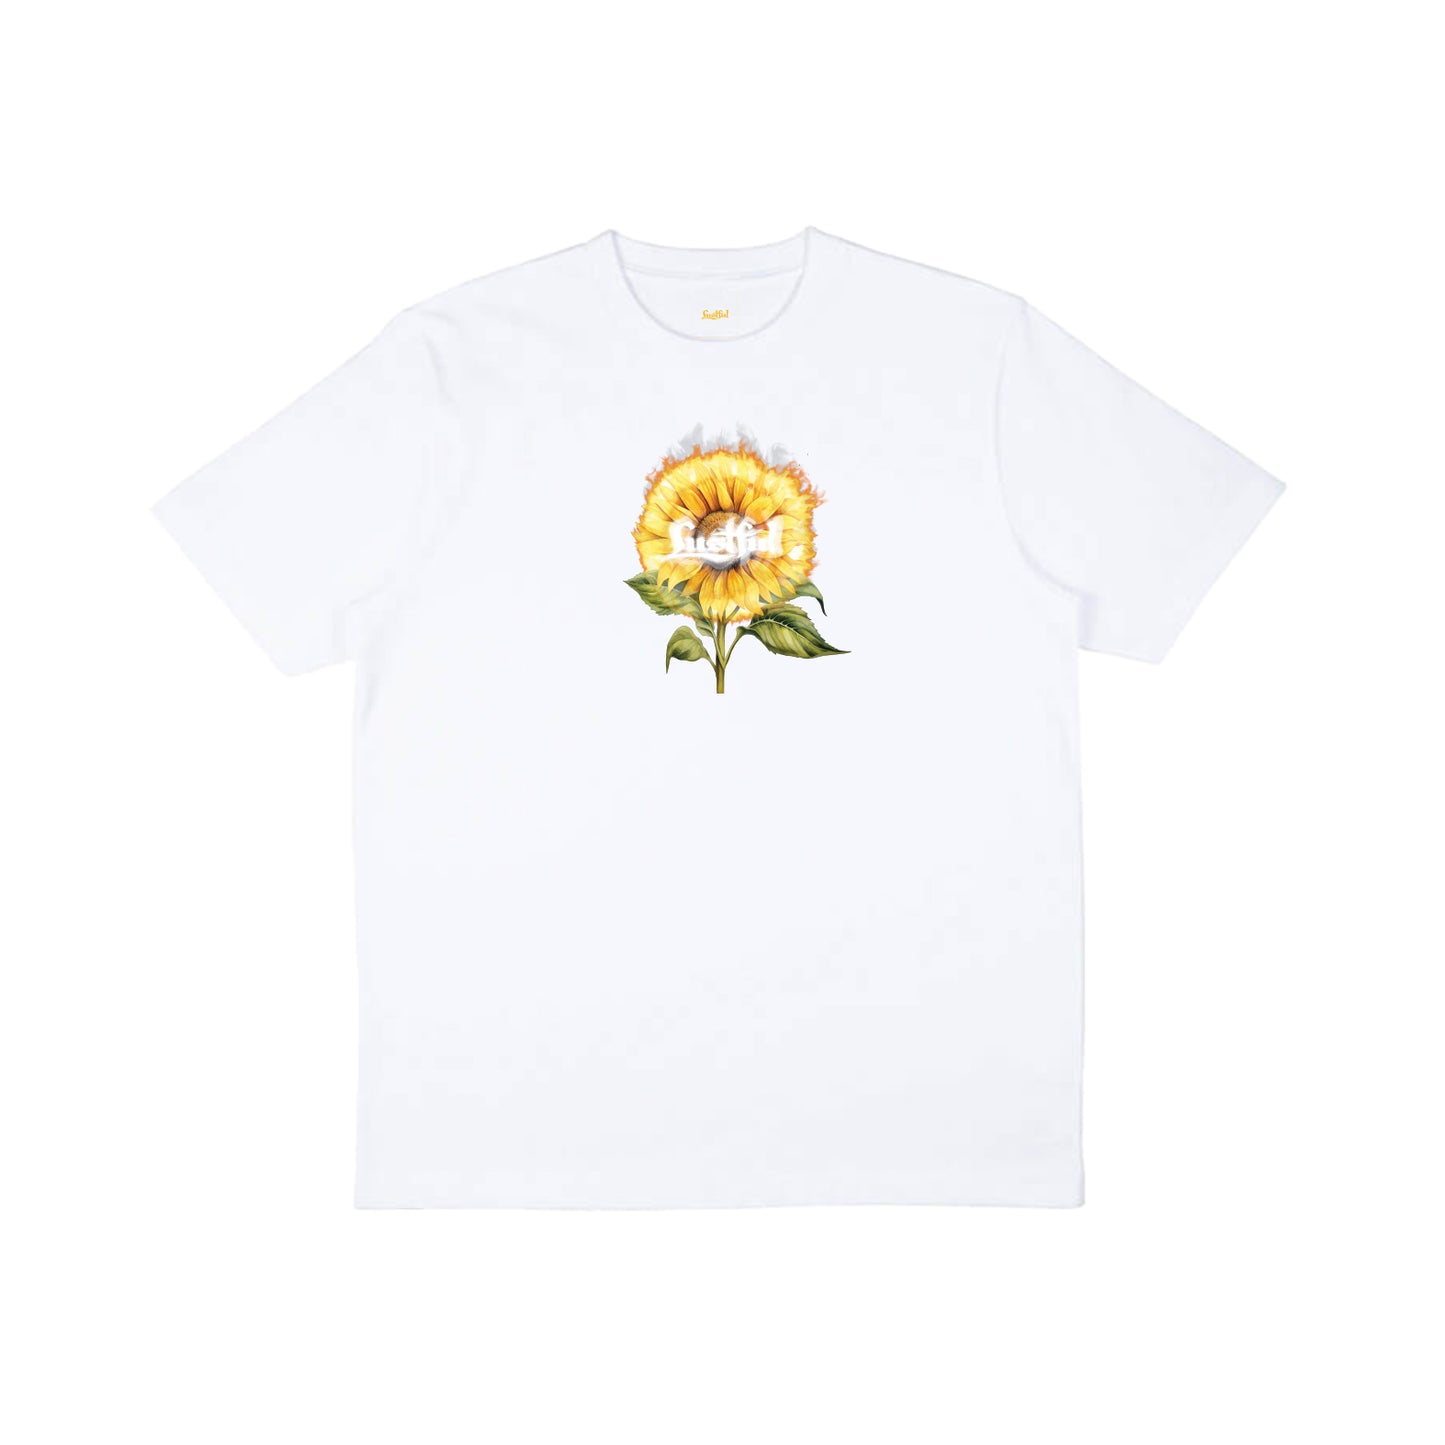 Sunflower in white